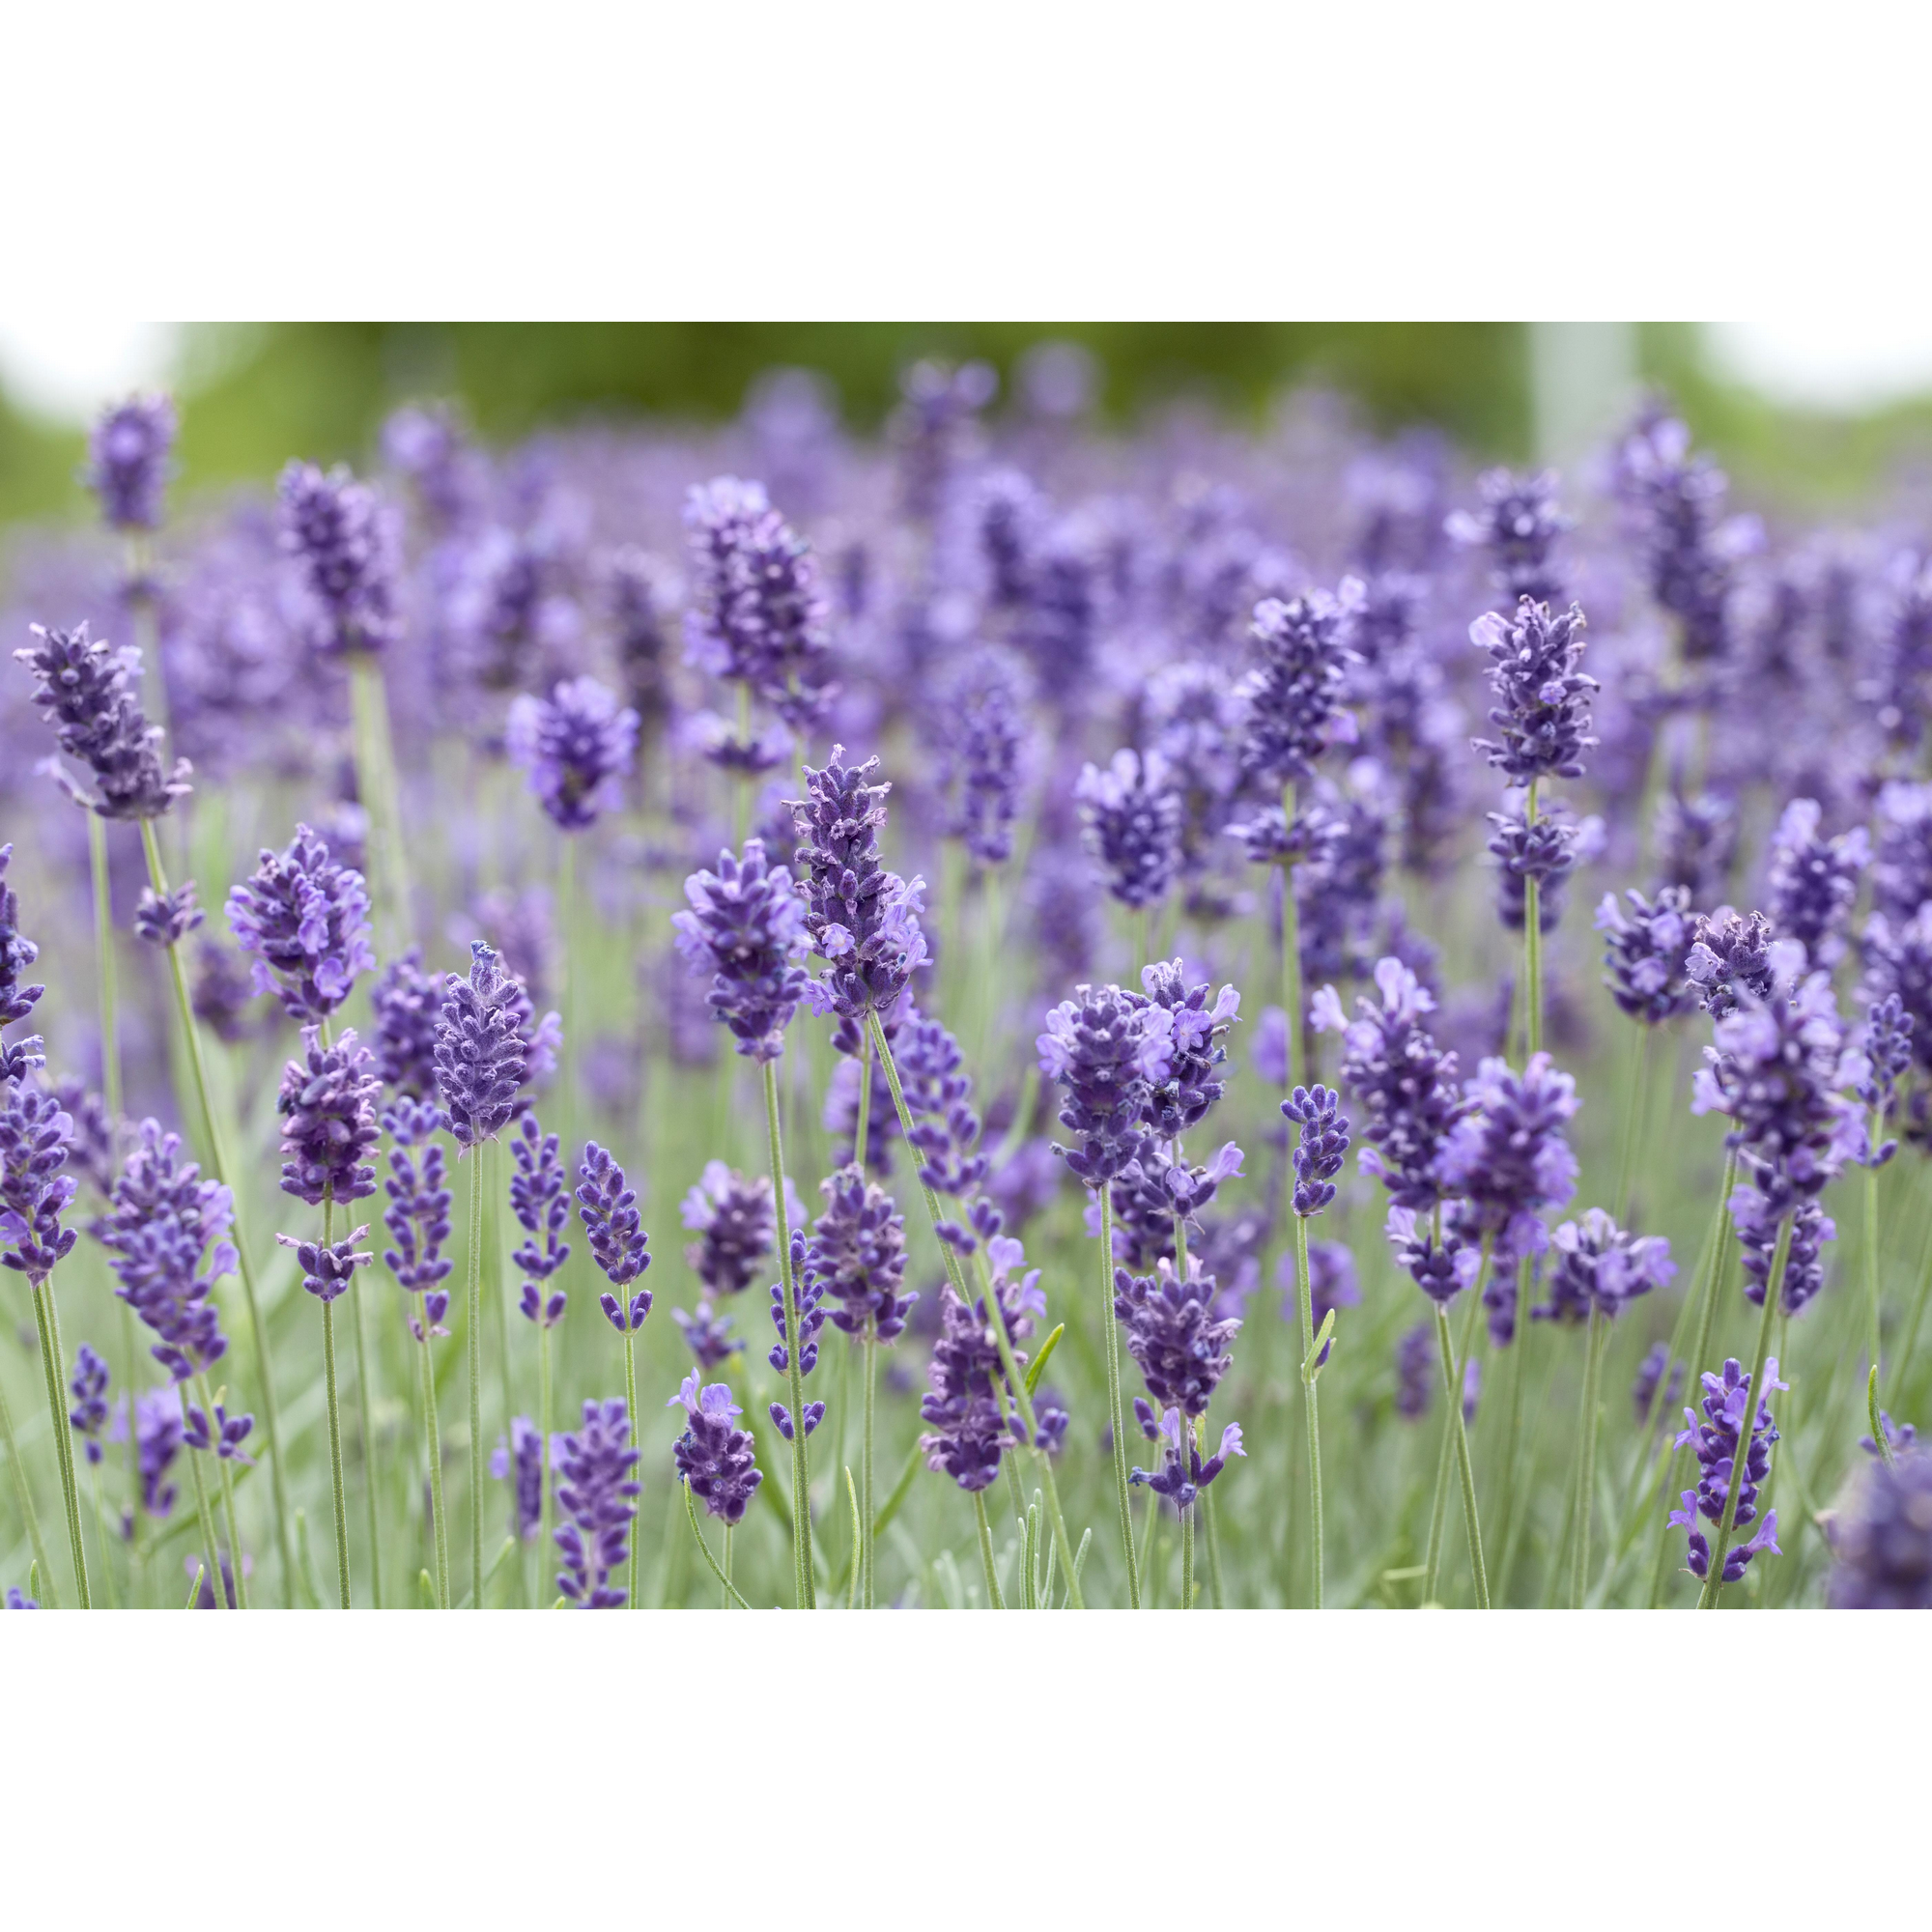 Lavendel 'Hidcote Blue', 9 cm Topf, 3er-Set + product picture